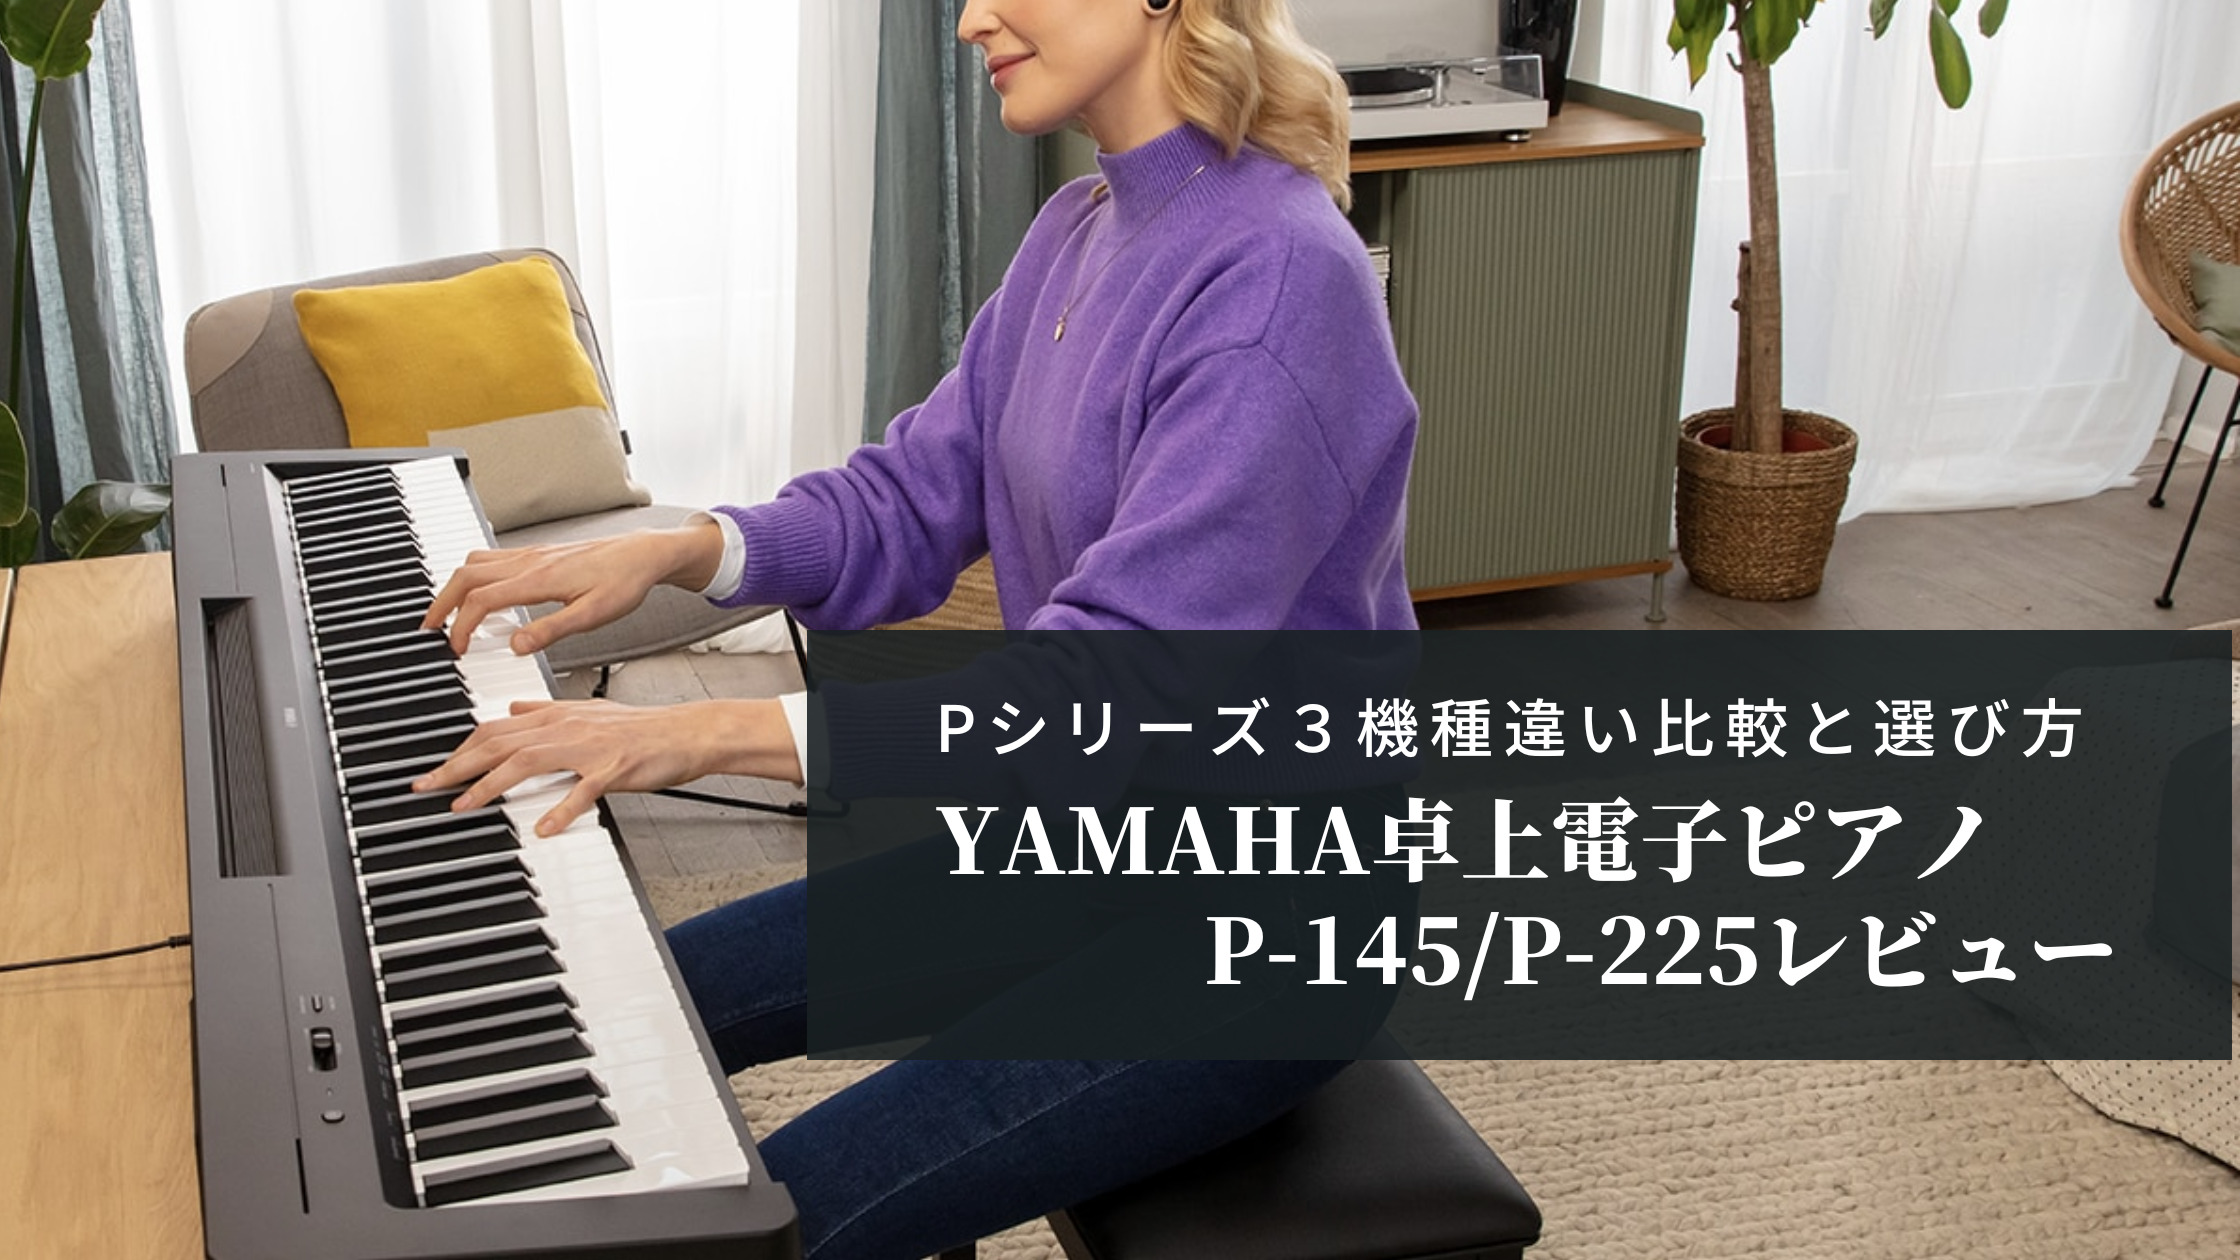 ヤマハP-145/P-225レビュー【Pシリーズ違い比較/選び方】 | yamaピアノ